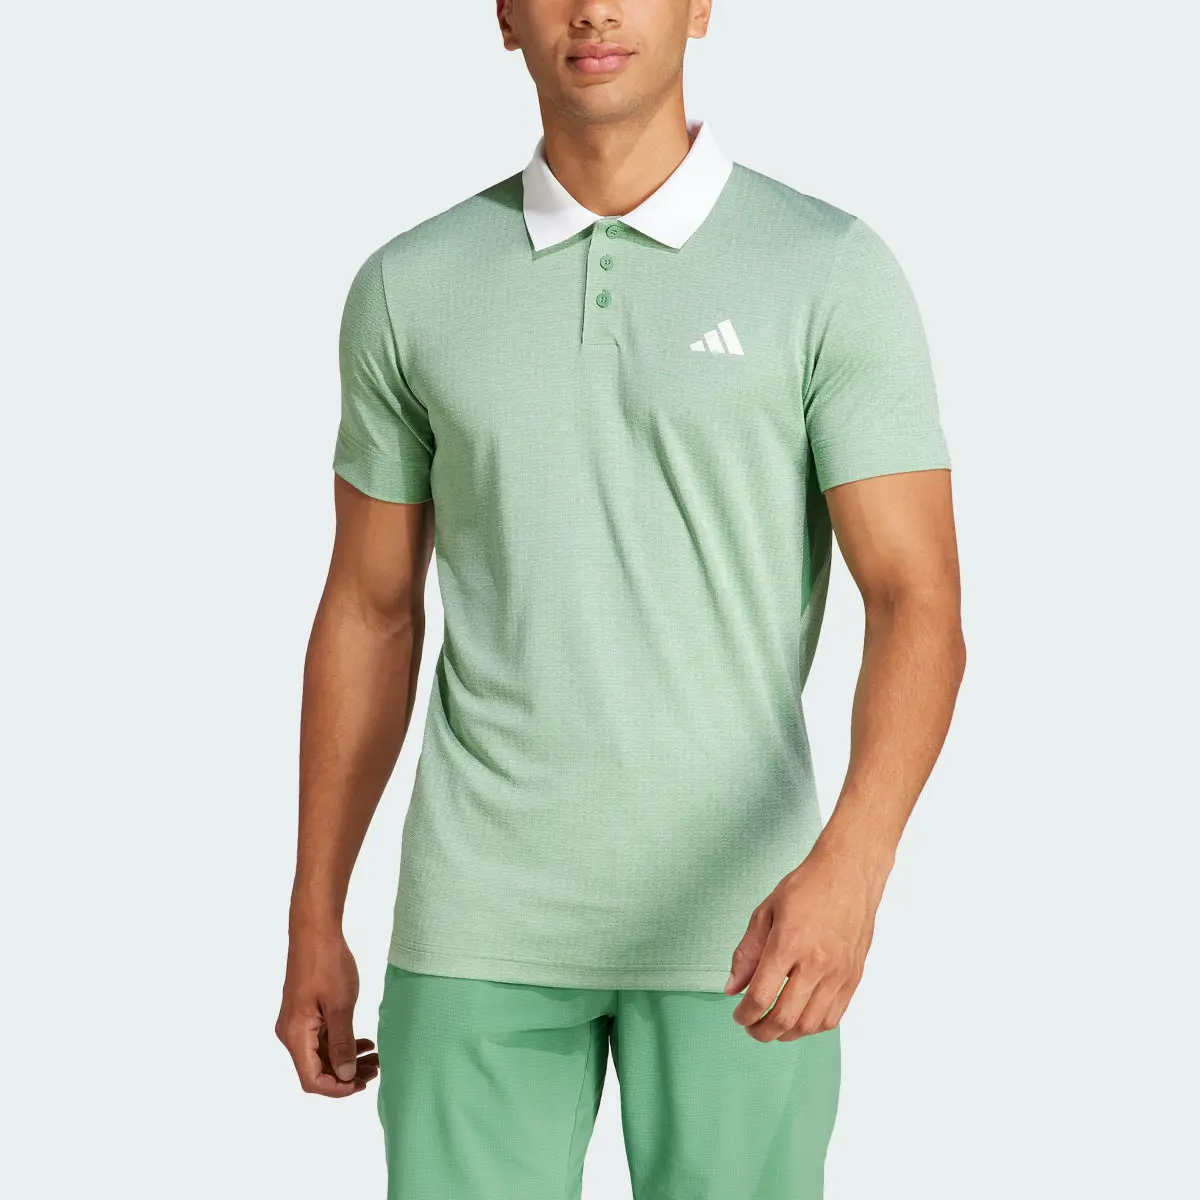 Adidas Tennis FreeLift Poloshirt. 1